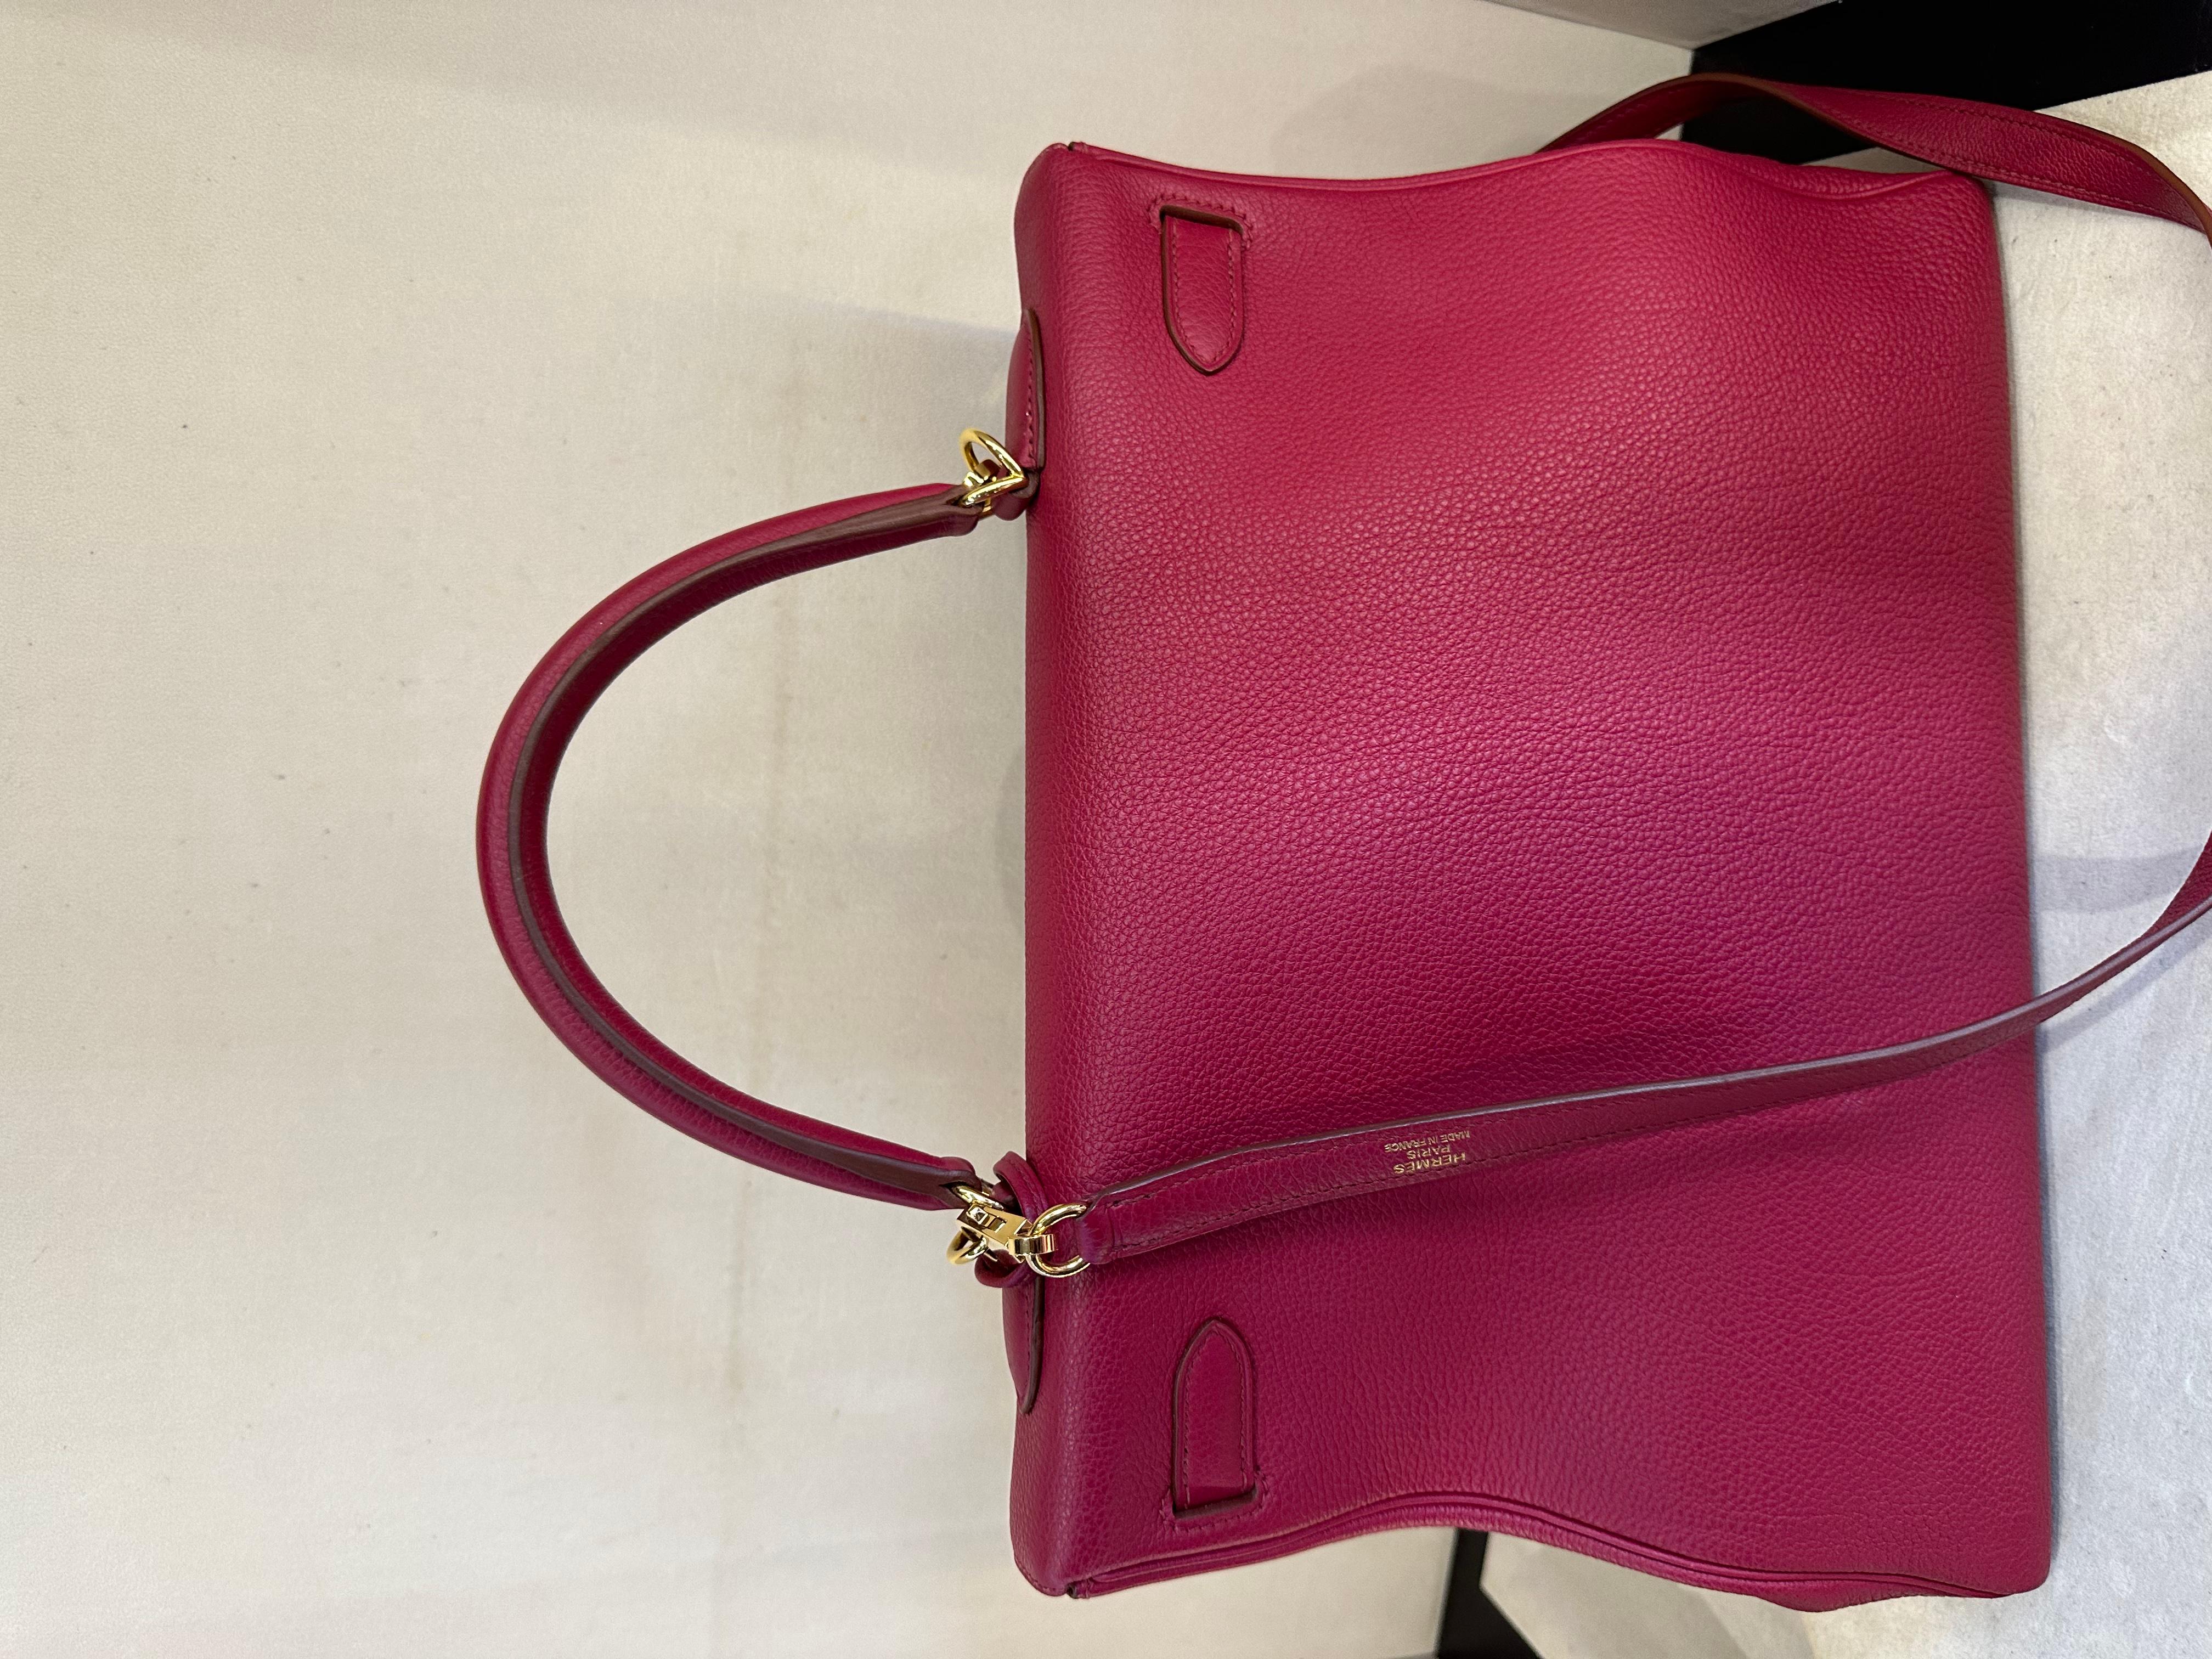 Sac Kelly Hermès en couleur Rubis, cuir togo et quincaillerie dorée. Ce magnifique sac à main est de couleur rouge, ce qui lui confère une grande visibilité tout en restant très polyvalent. Le cuir Togo est très résistant et luxueux. Le sac Kelly